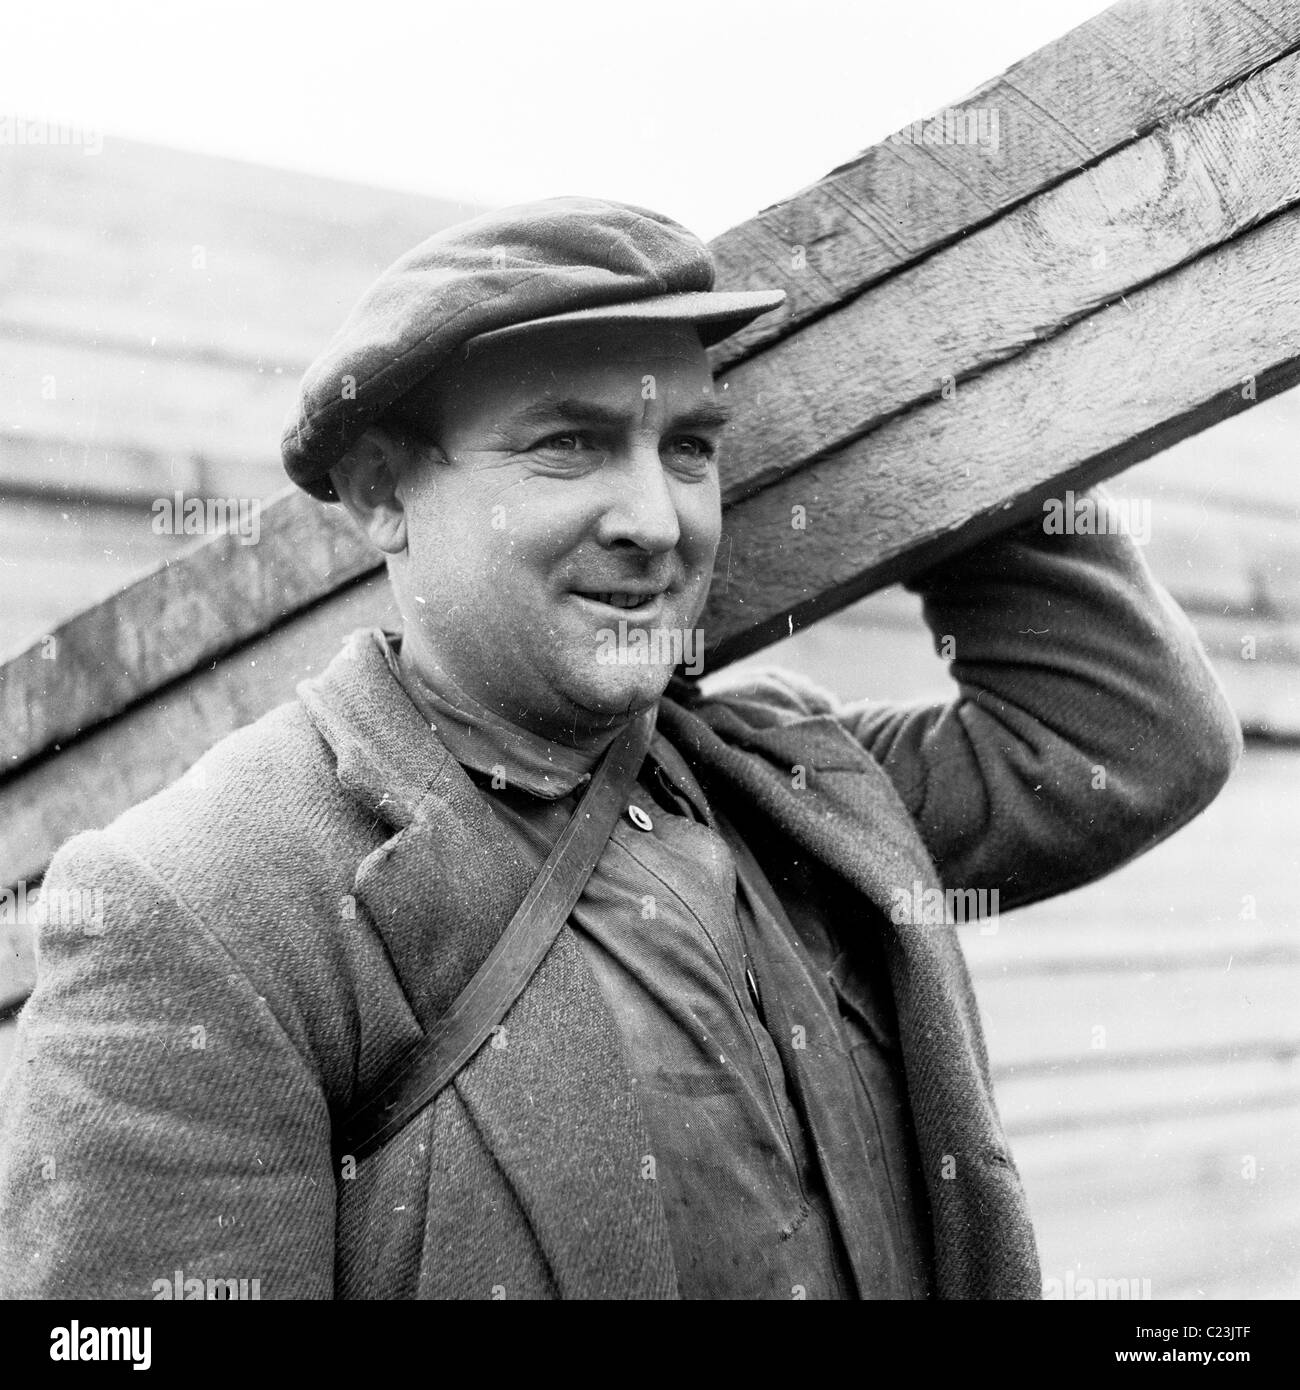 England der 1950er Jahre. Bauarbeiter, die flache Mütze und Jacke trägt Holzplatten in diesem Geschichtsbild von J Allan Cash. Stockfoto